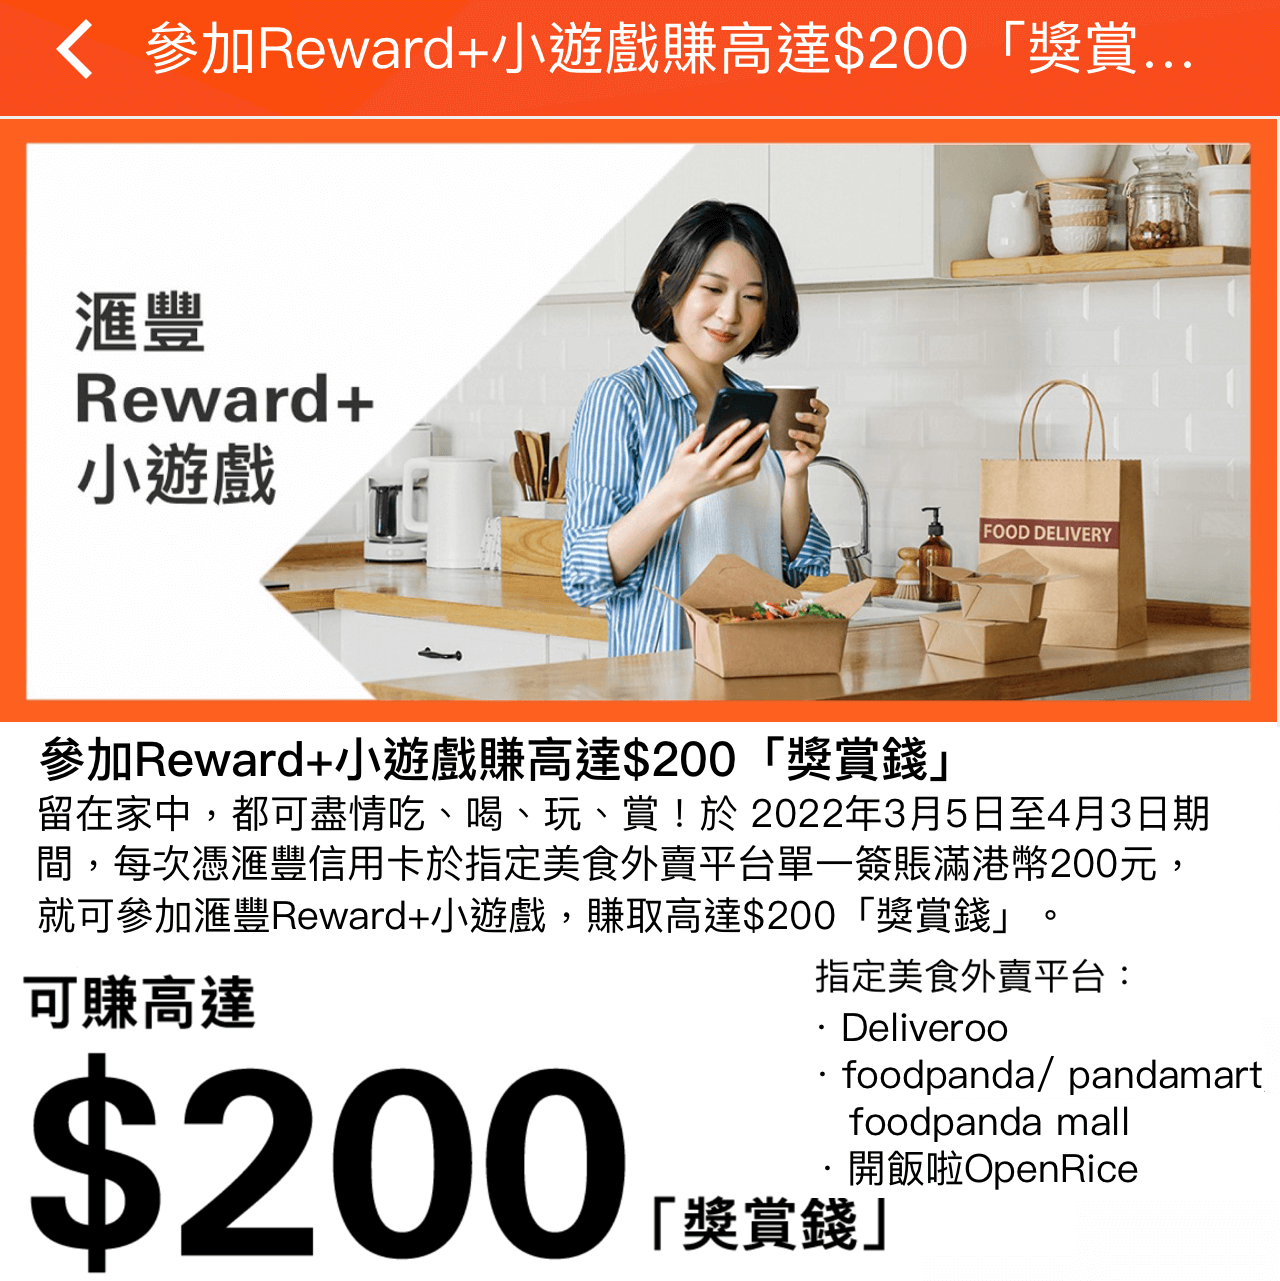 【滙豐信用卡Reward+小遊戲】滙豐Red信用卡單一簽賬滿HK$500即可玩Reward+小遊戲！賺高達$500「獎賞錢」！最少都有$5！